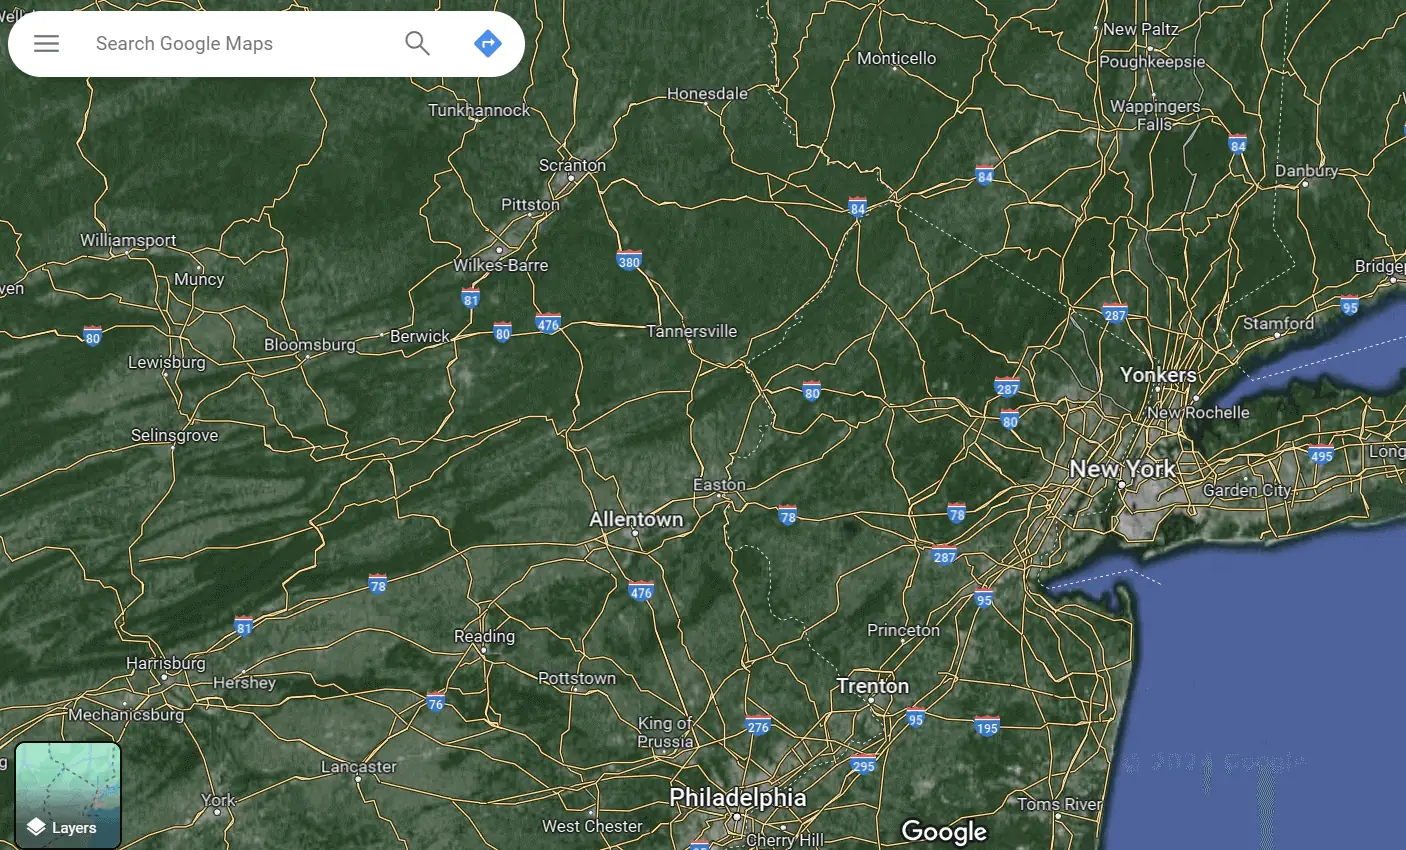 Quantos dados o Google Maps usa